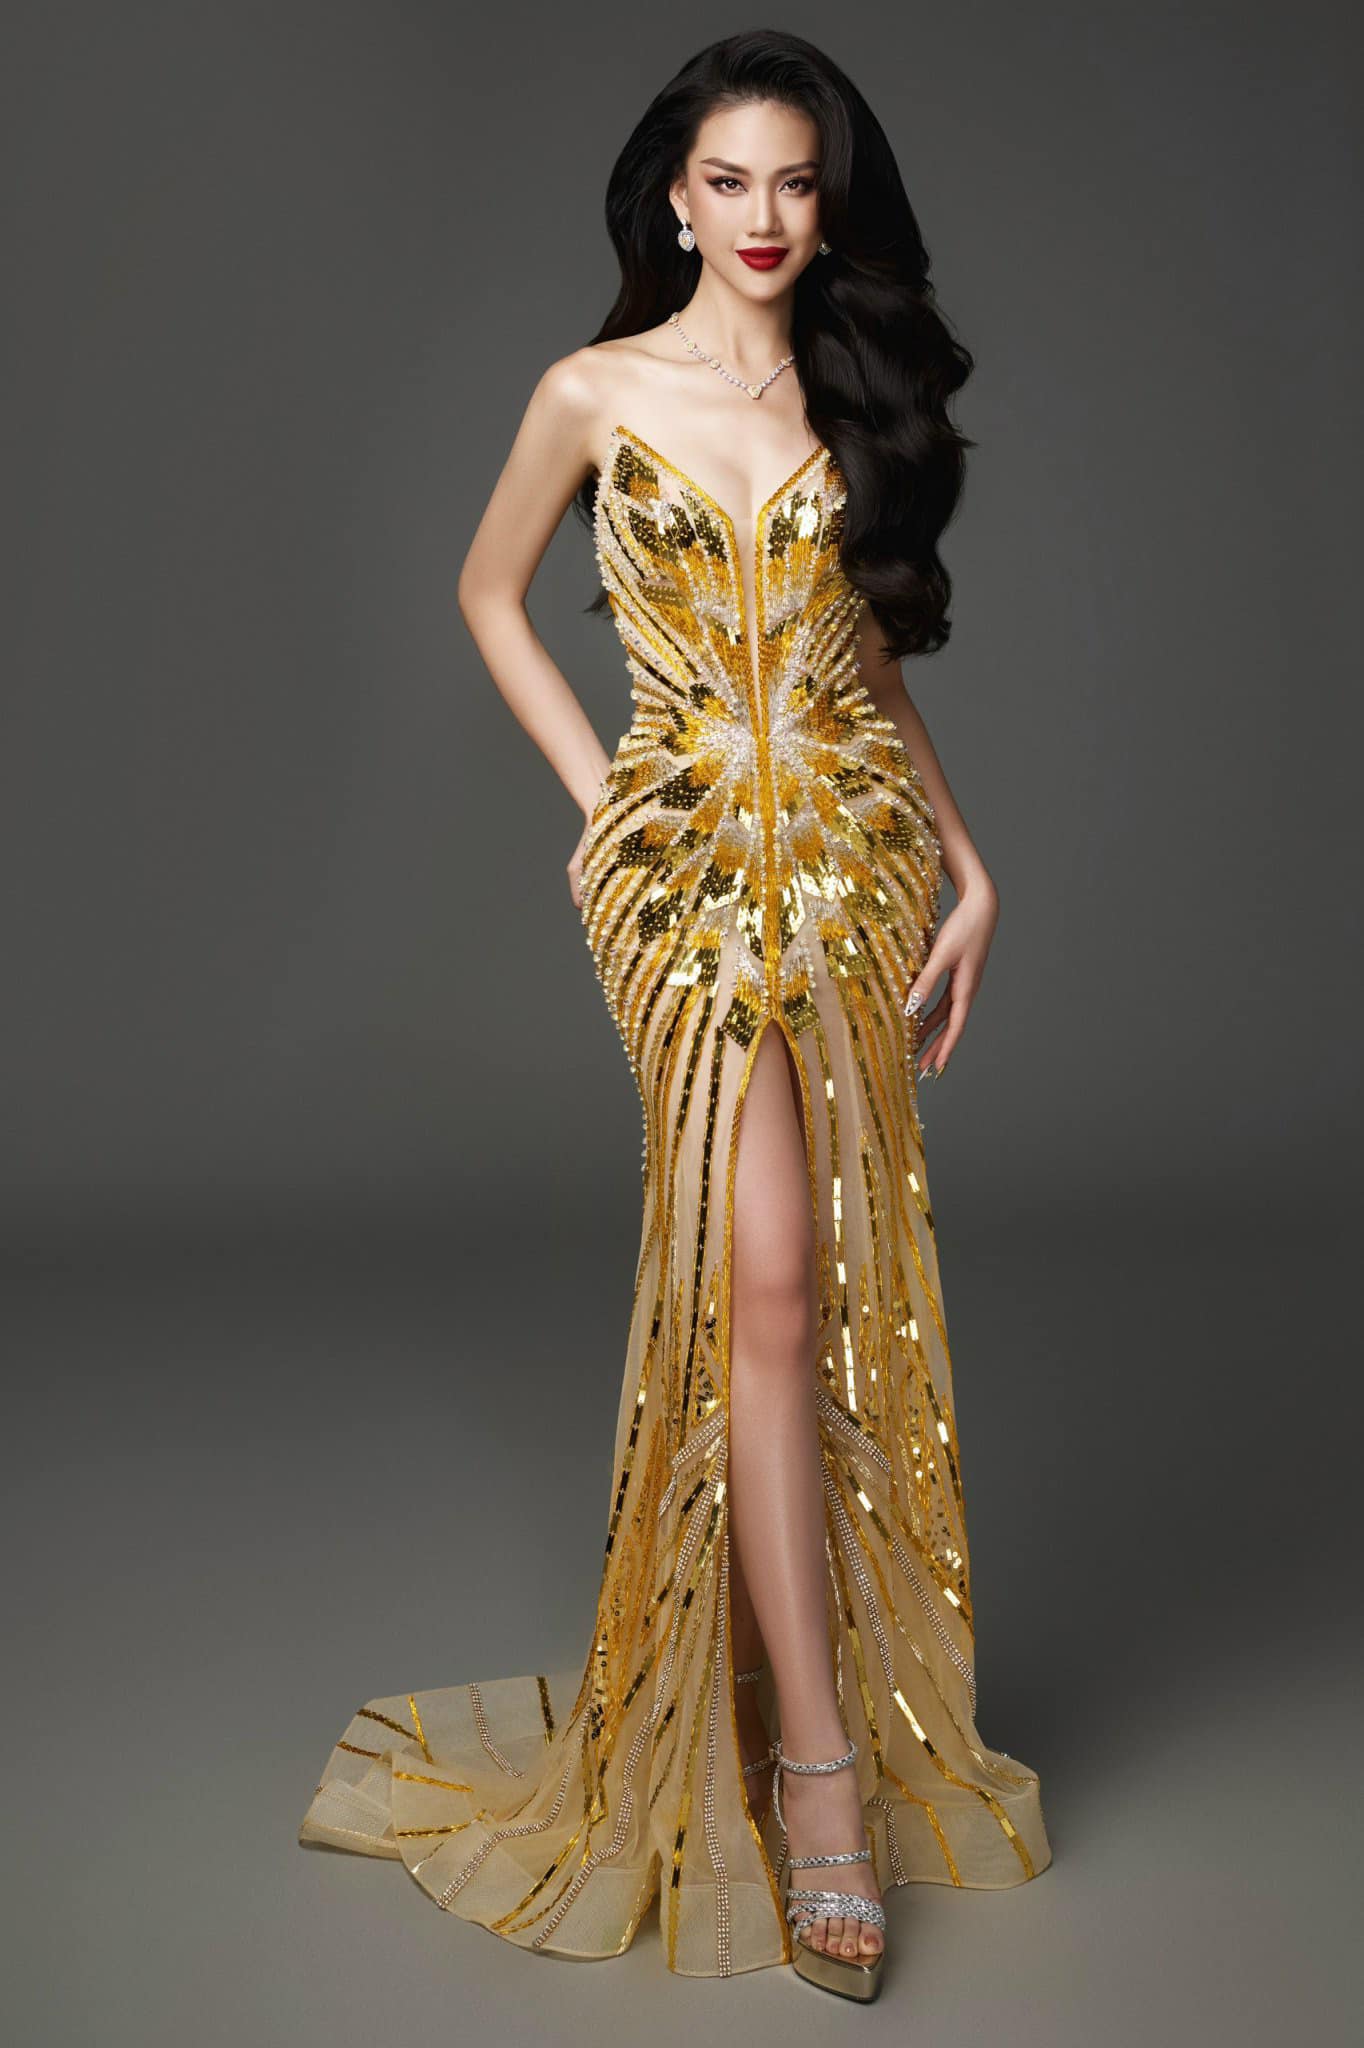 Hành trình trở thành Miss Universe Vietnam 2023 của Bùi Quỳnh Hoa - 3